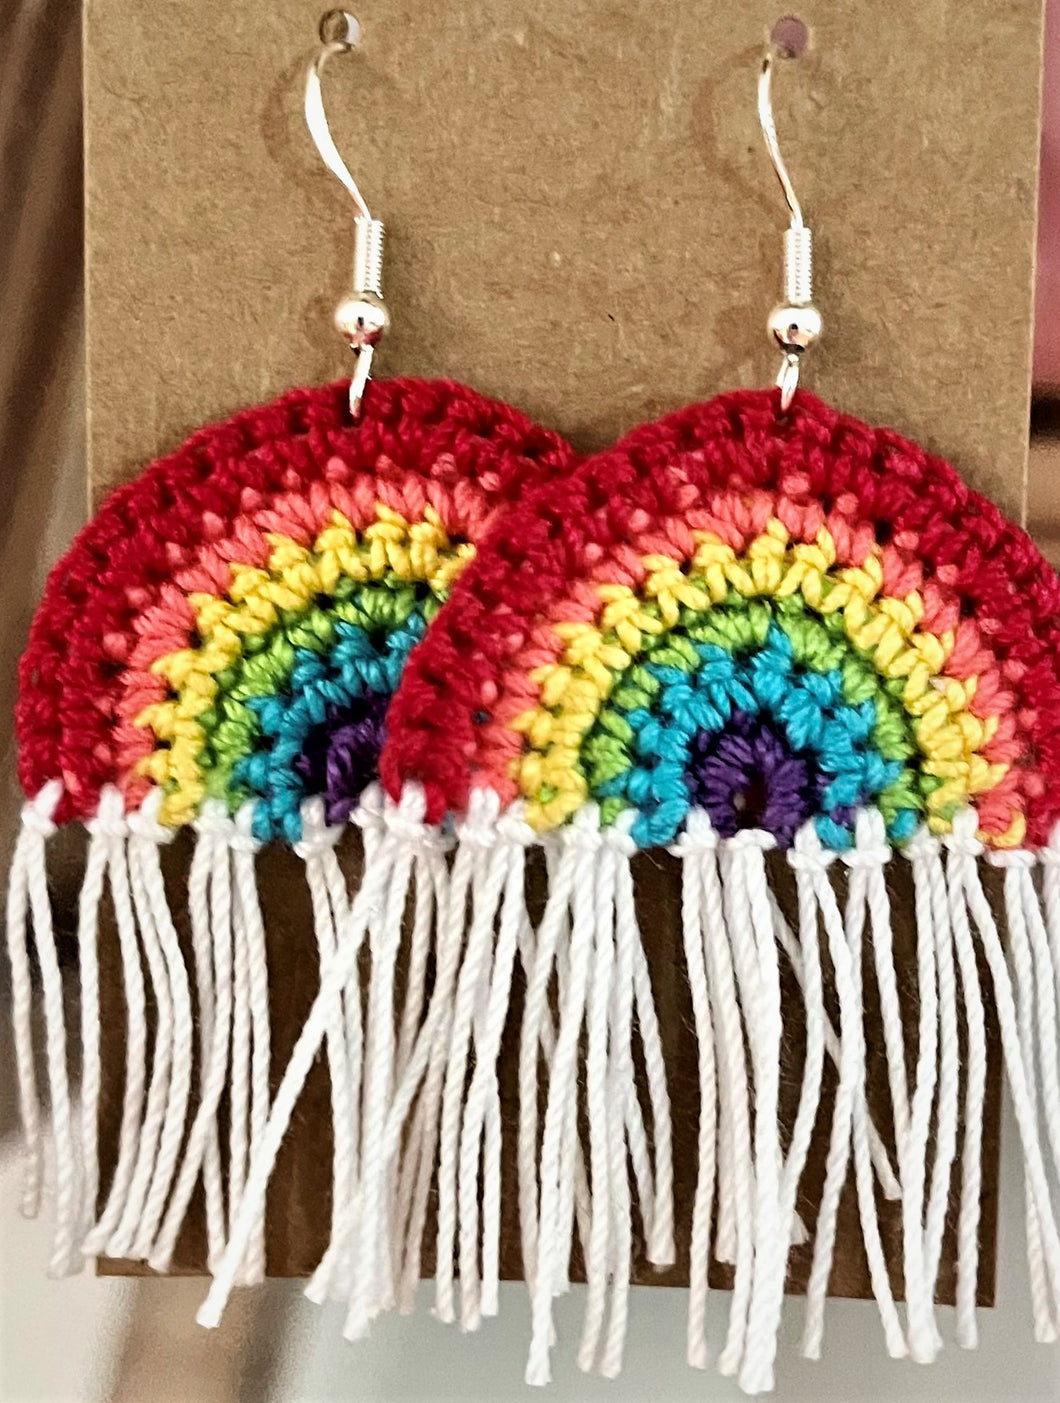 Crochet Rainbow Earrings